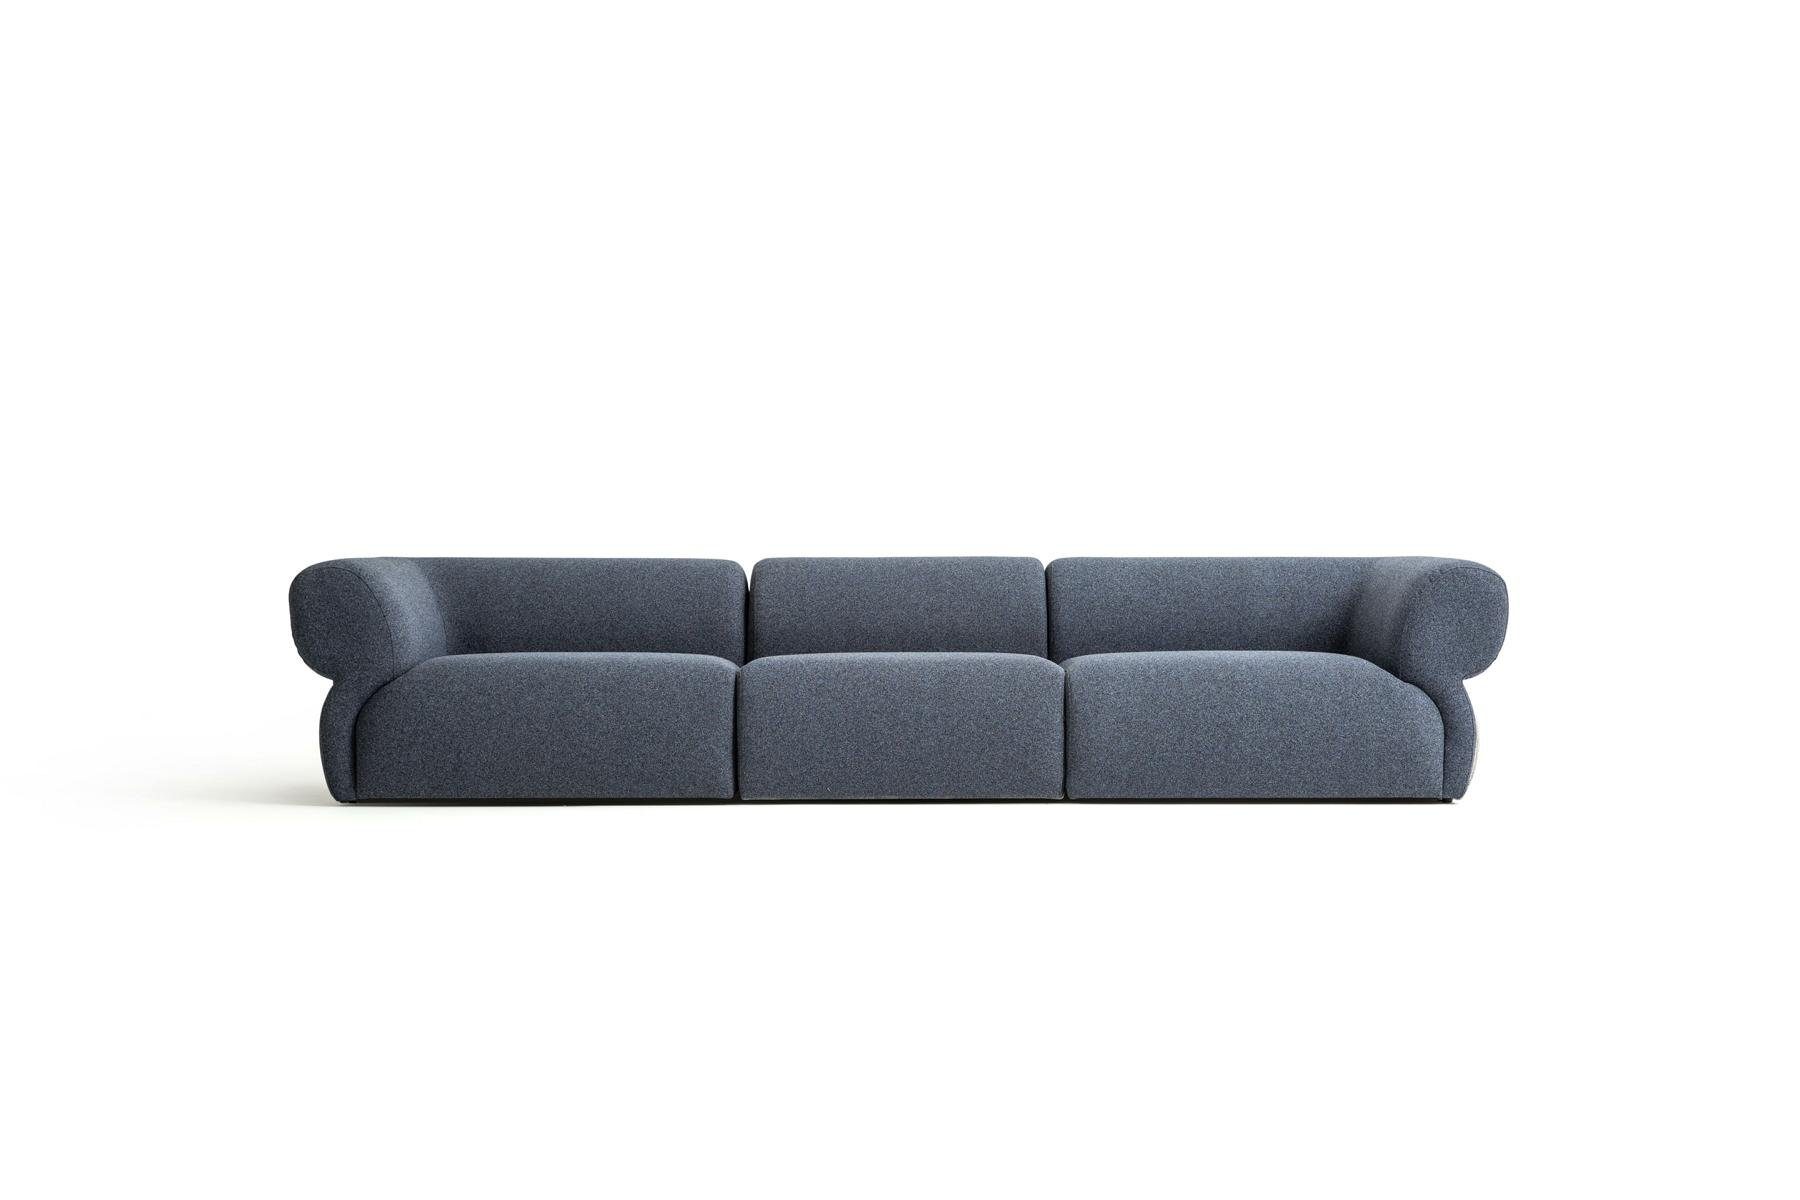 JVmoebel Big-Sofa Design Sofa 5 Sitzer Wohnzimmer Polstersofa Modern Stil, Made in Europe Blau